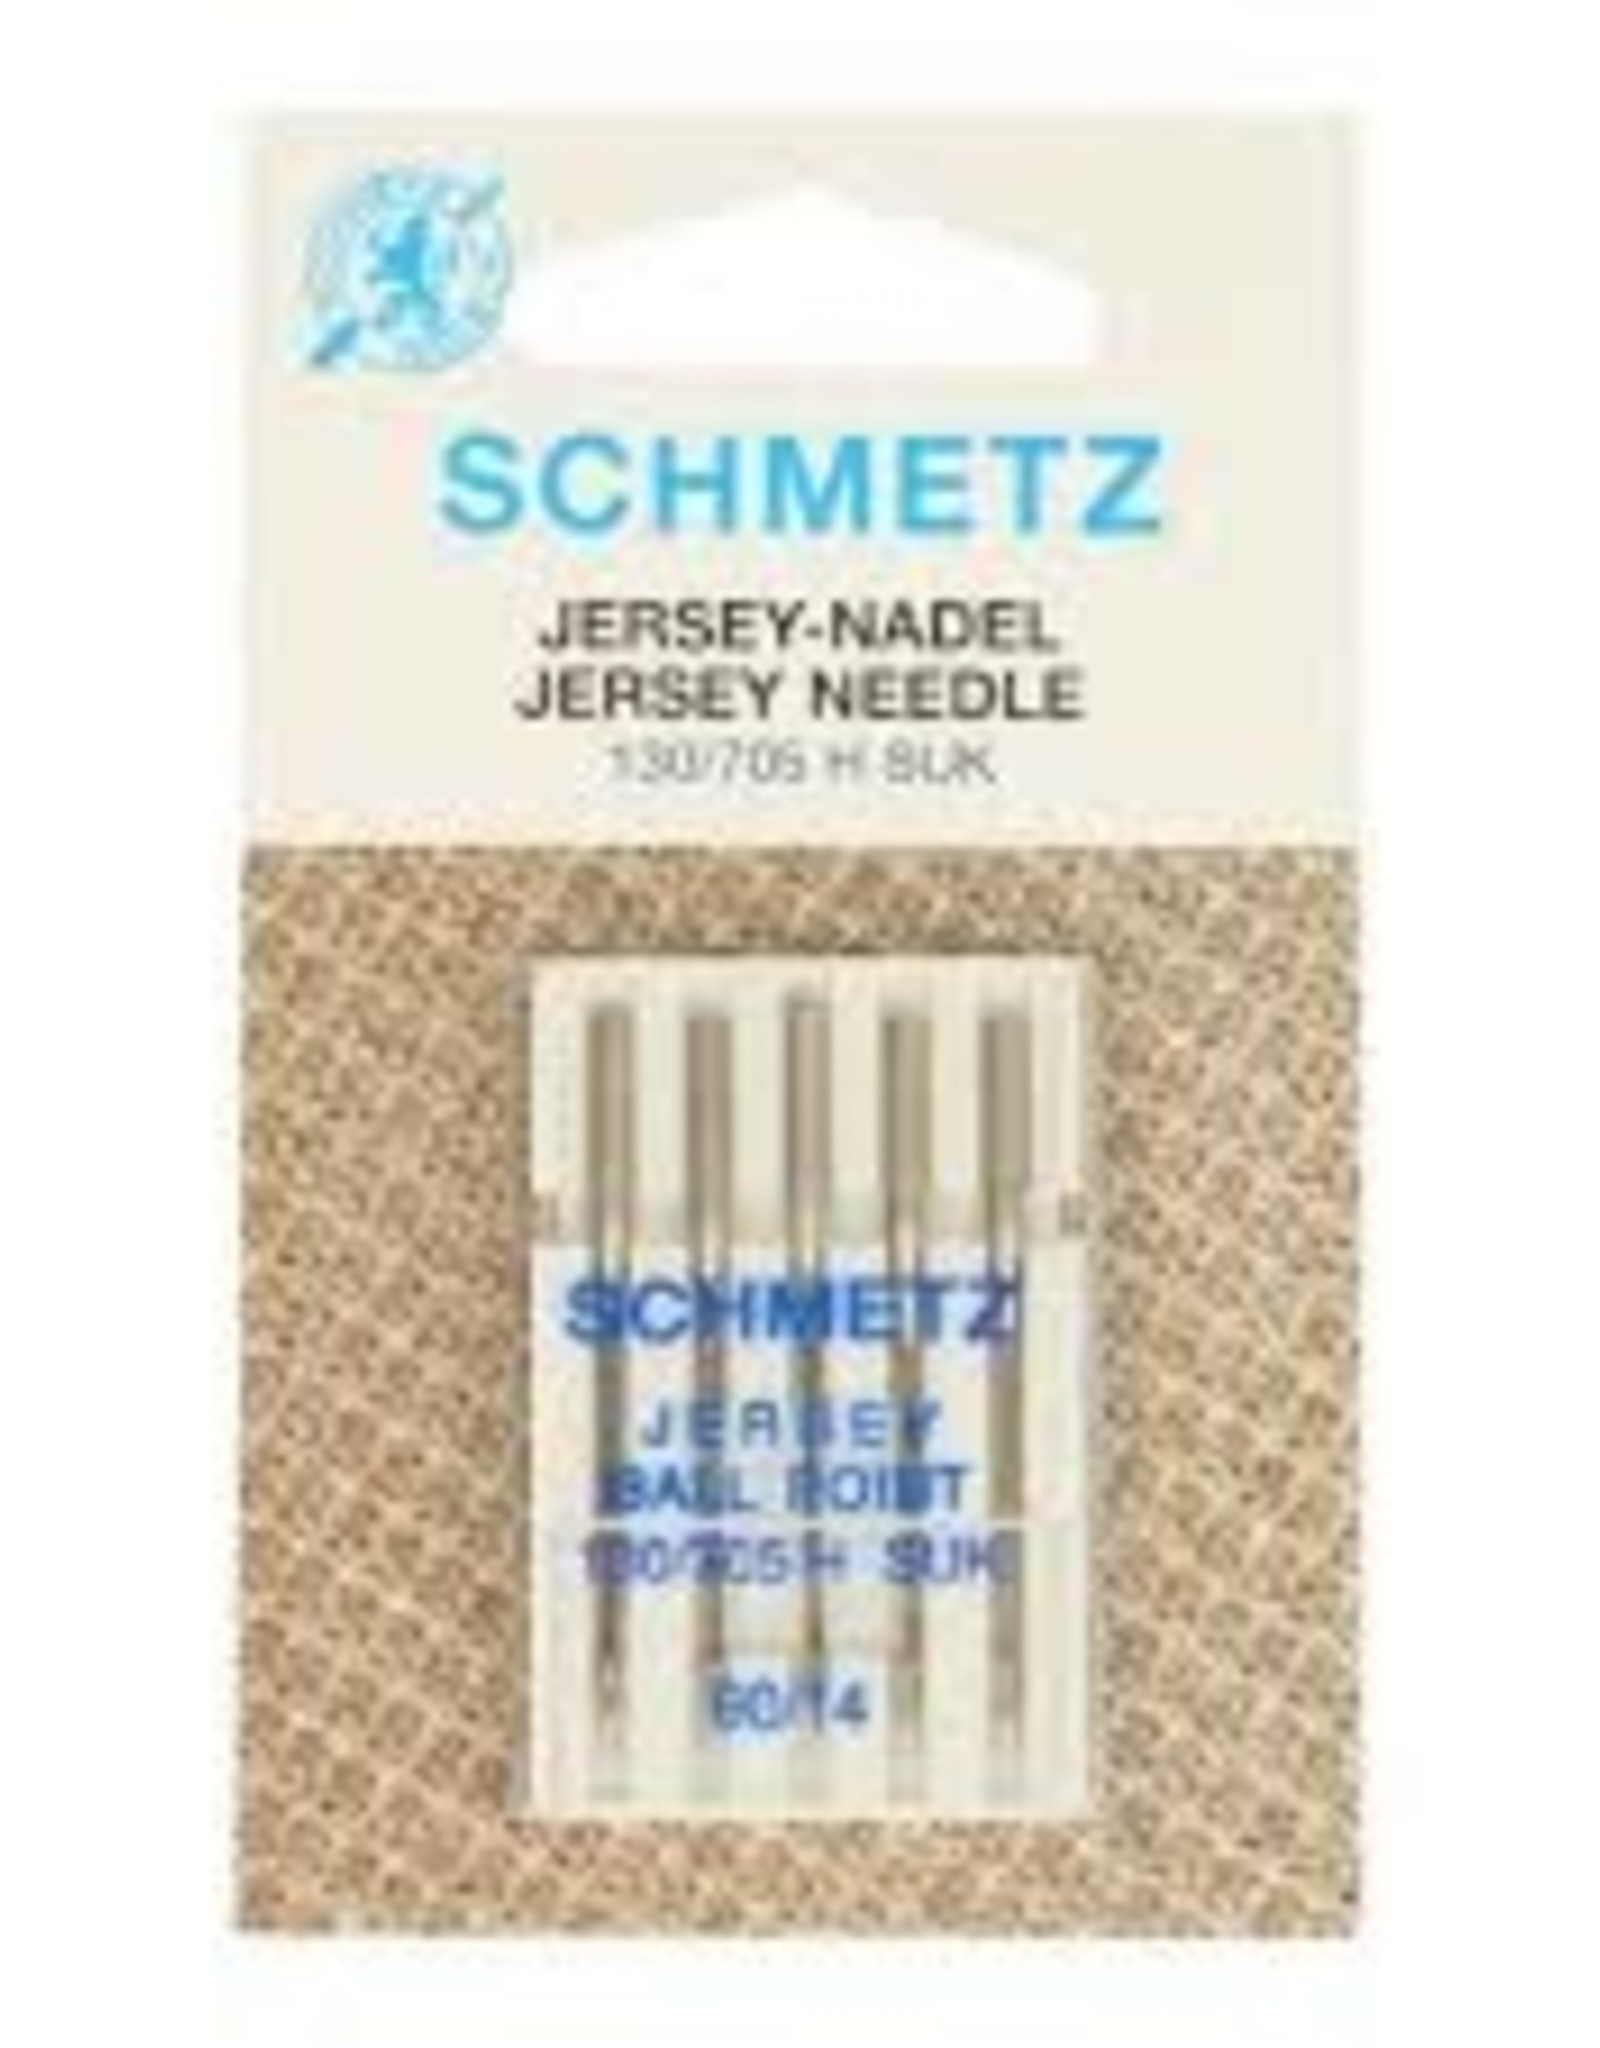 schmetz Schmetz jersey ballpoint 90/14